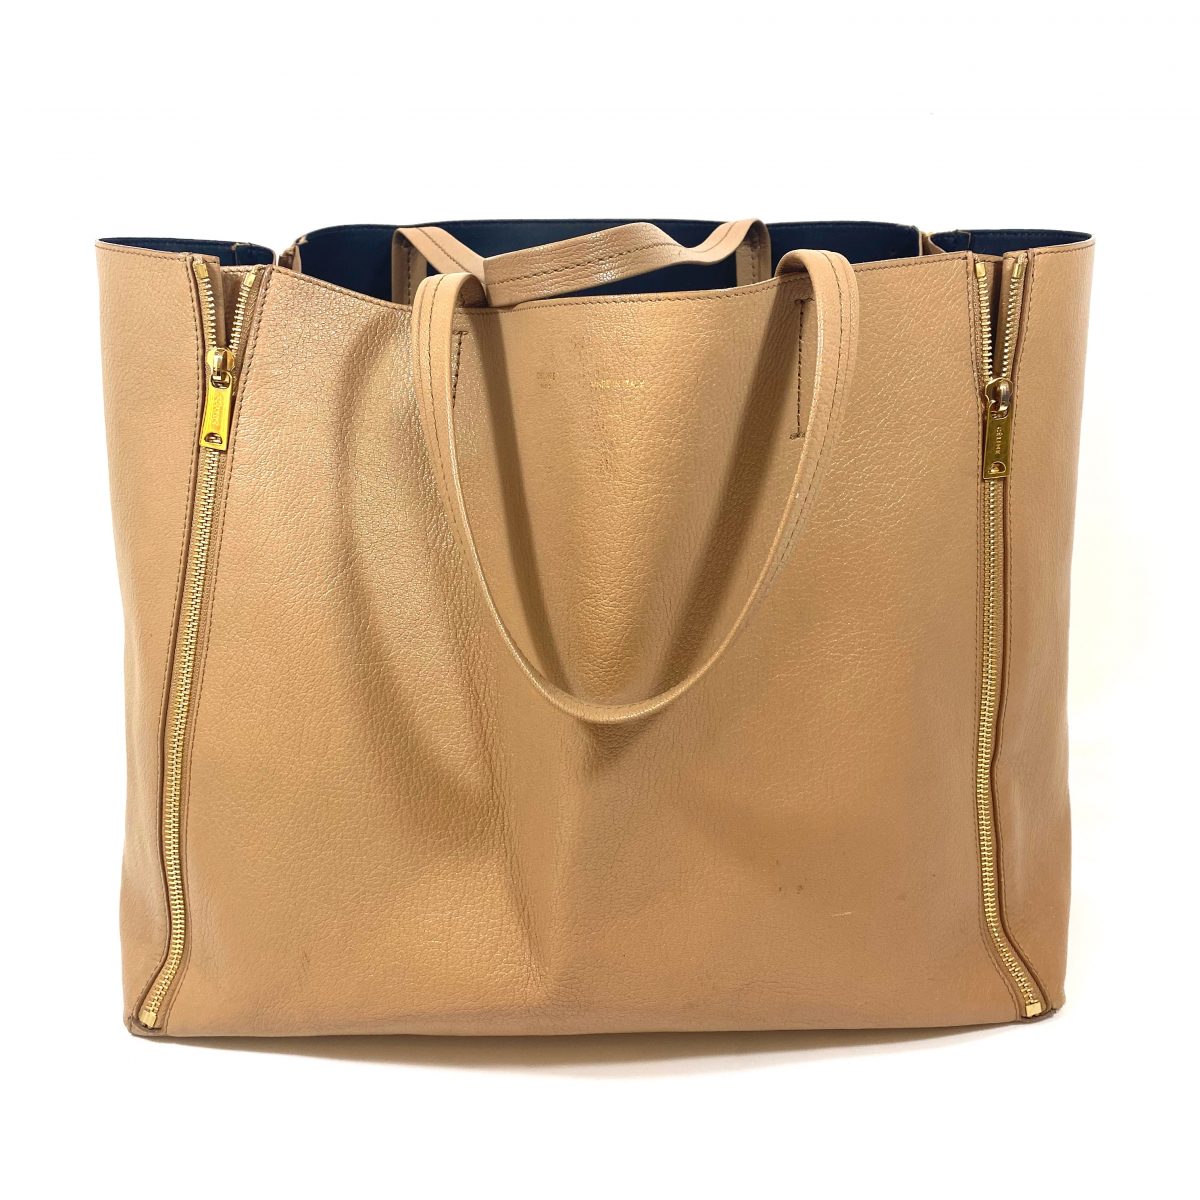 Celine designer bags